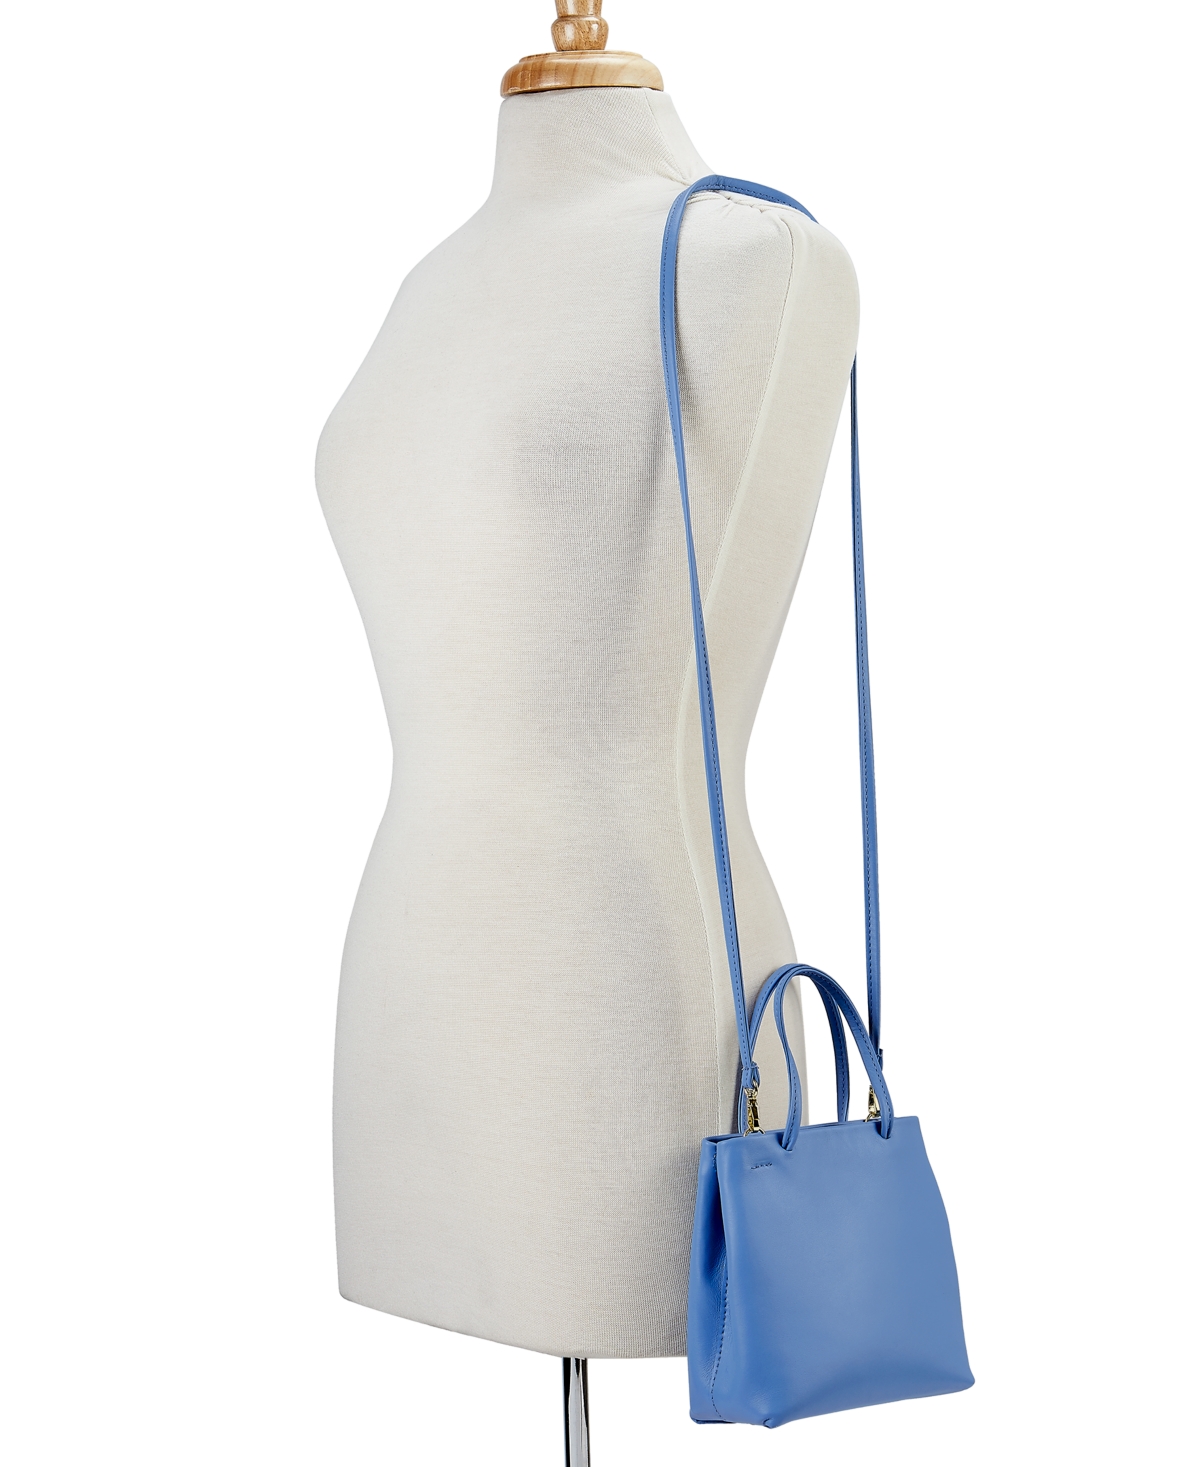 Shop Gigi New York Sydney Mini Leather Shopper Bag In French Blue